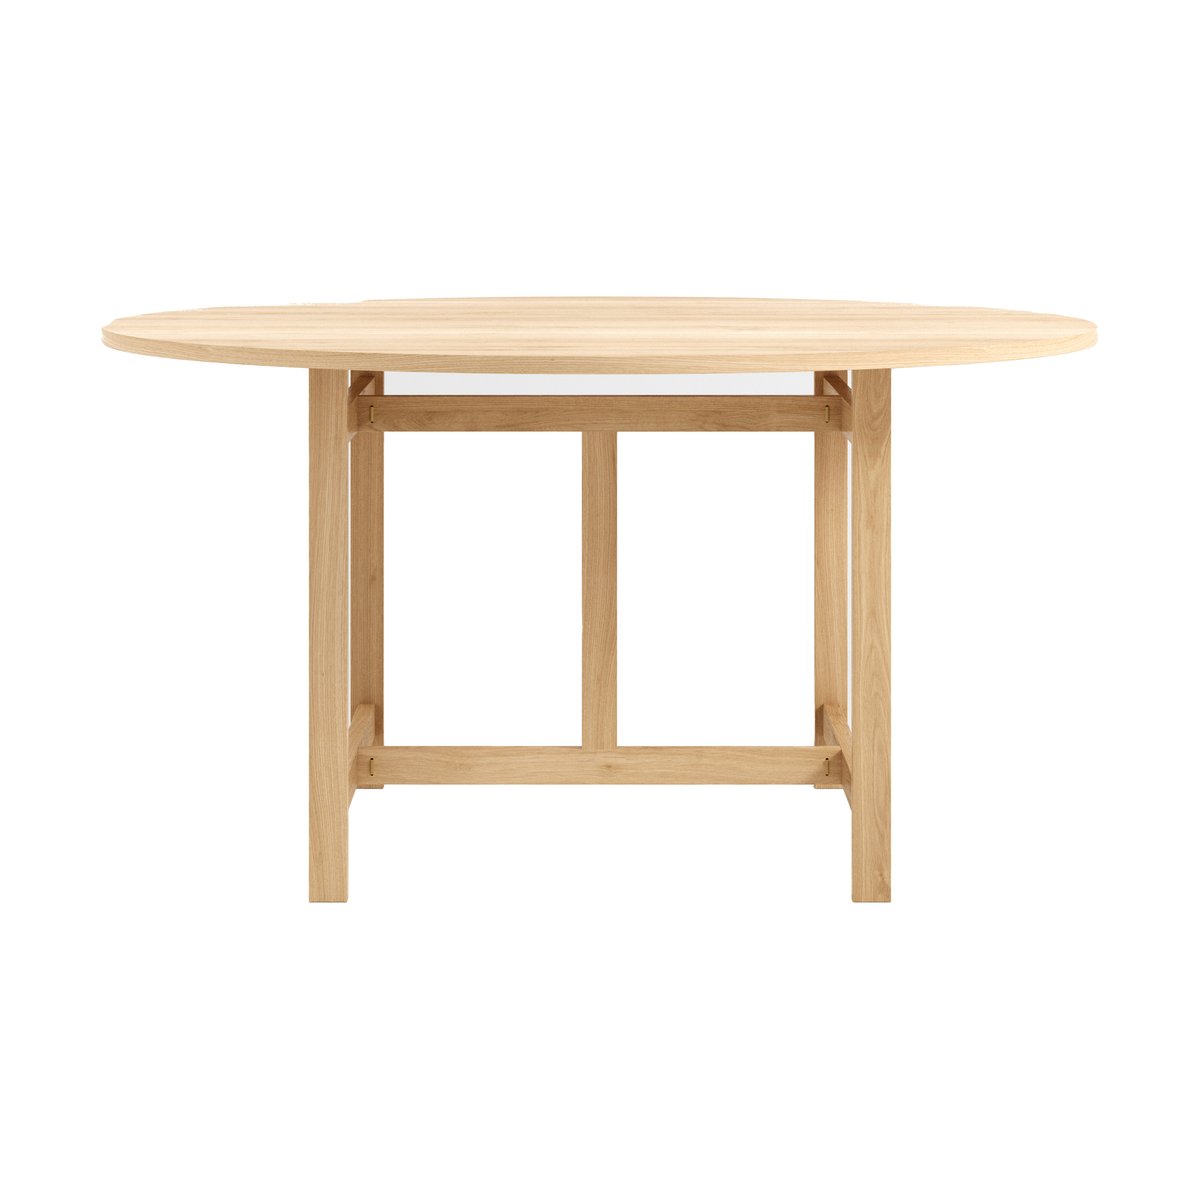 Bilde av MOEBE Moebe round dining table spisebord Ø 140 x 732 cm Eik